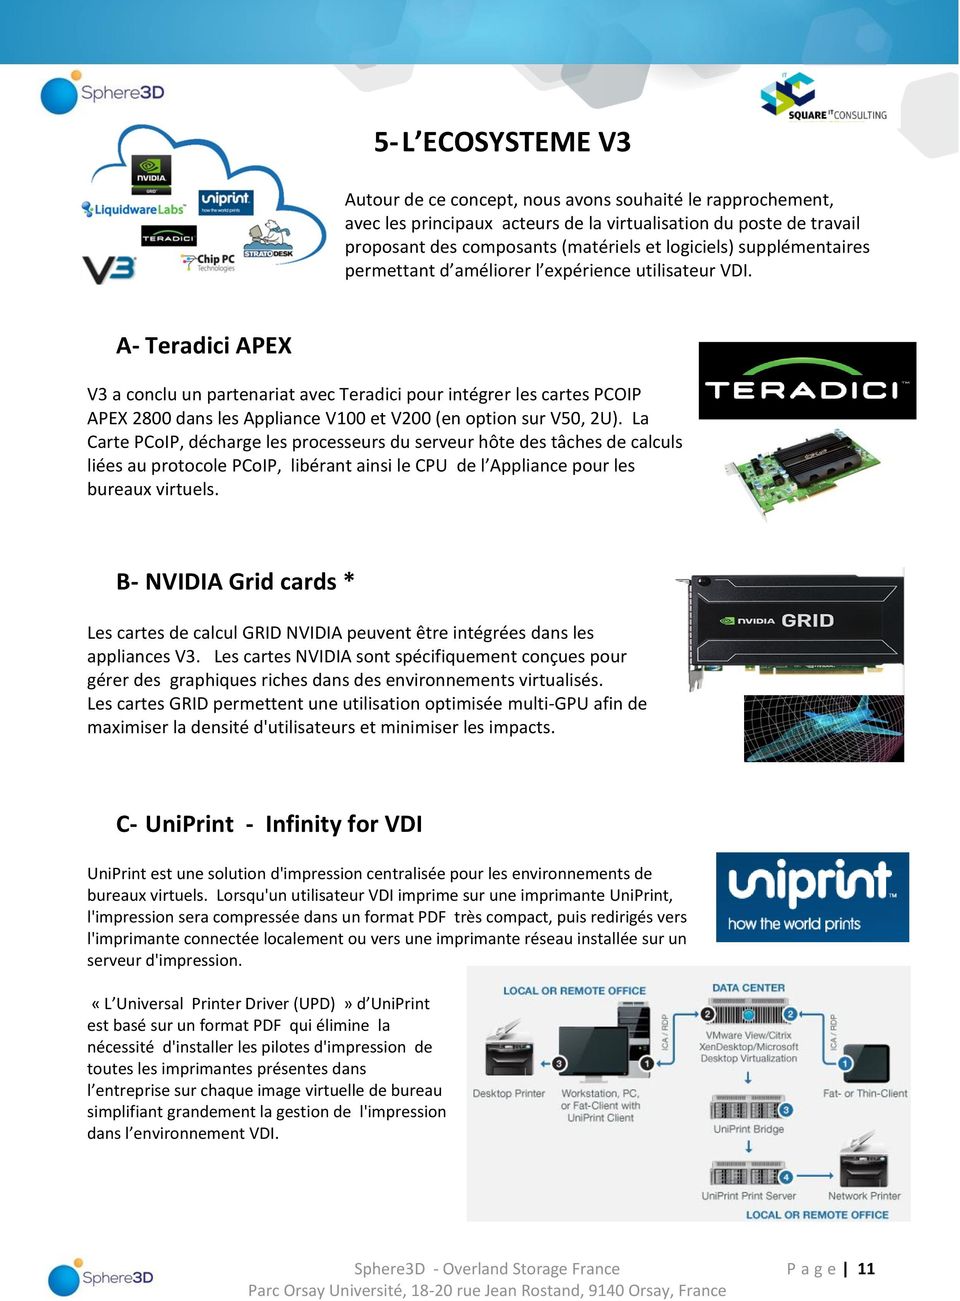 A- Teradici APEX V3 a conclu un partenariat avec Teradici pour intégrer les cartes PCOIP APEX 2800 dans les Appliance V100 et V200 (en option sur V50, 2U).